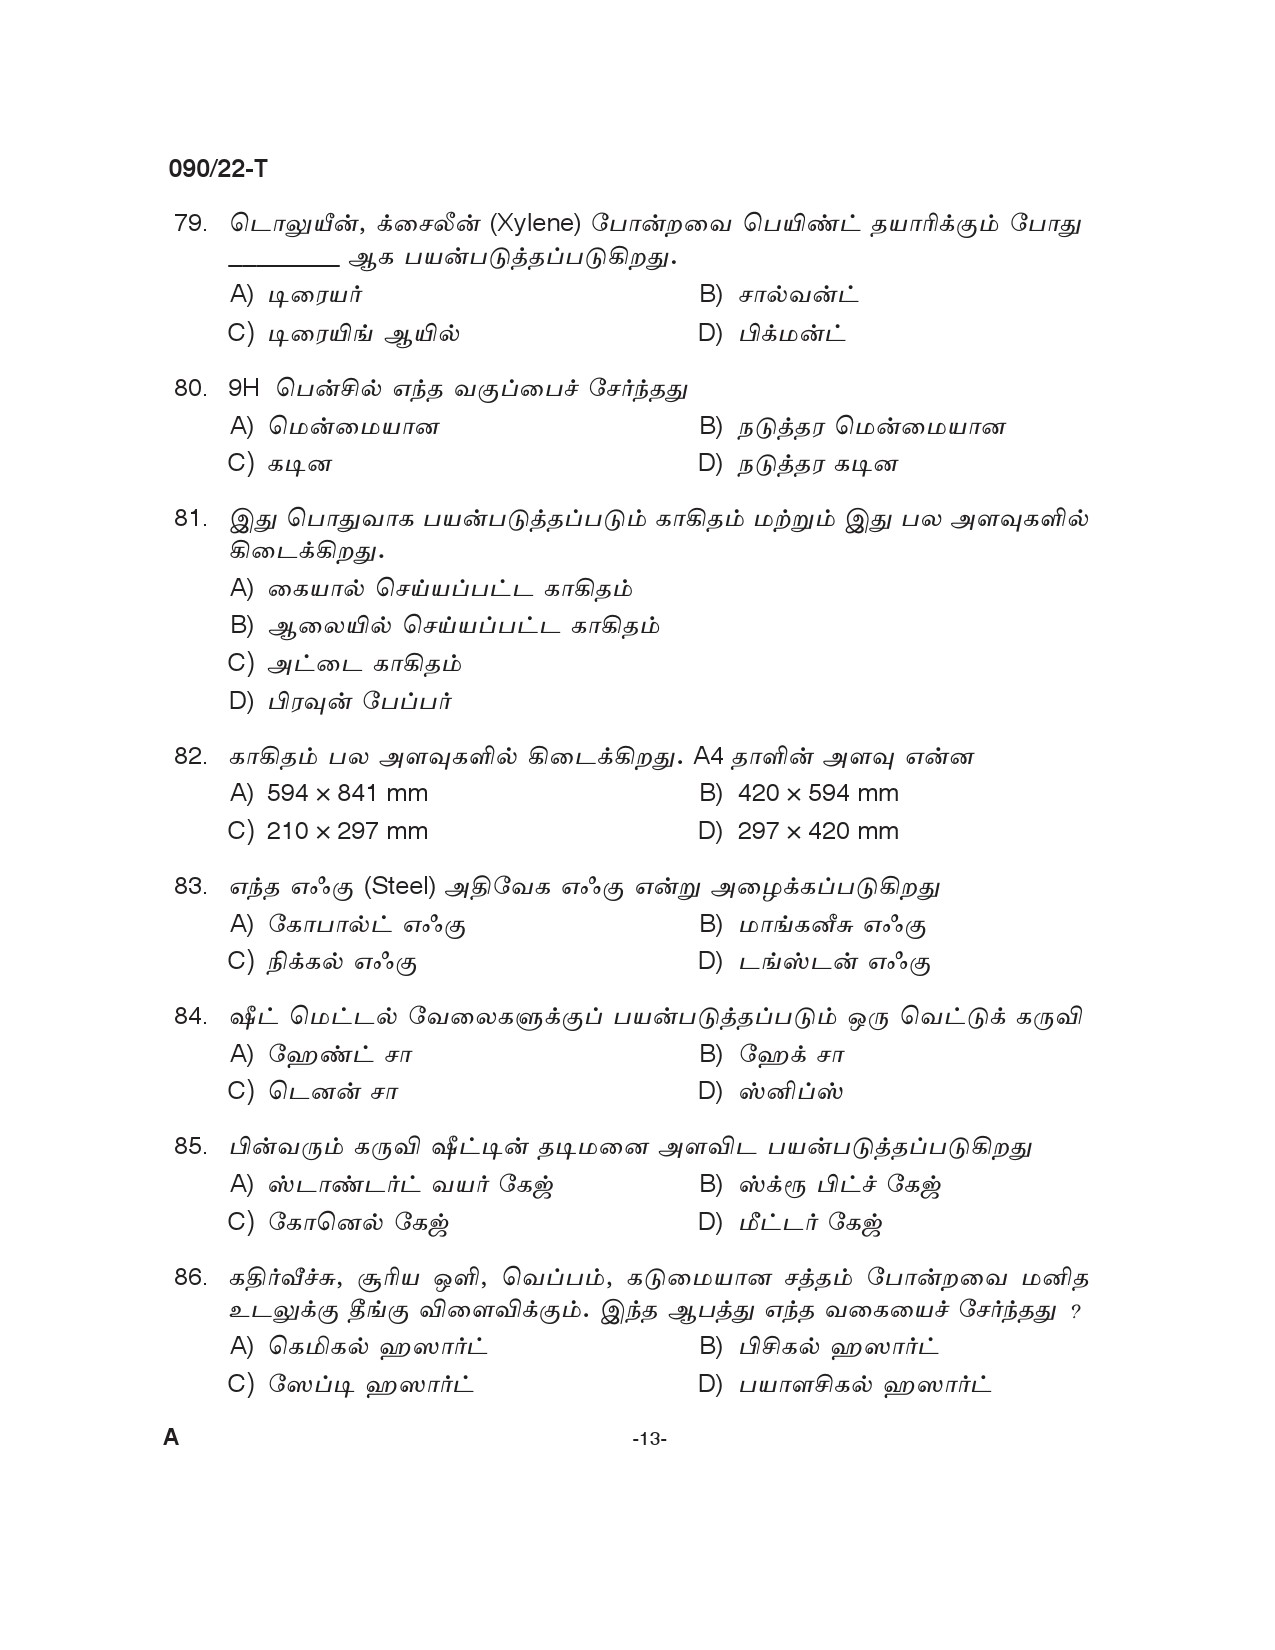 KPSC Painter Tamil Exam 2022 Code 902022 T 12